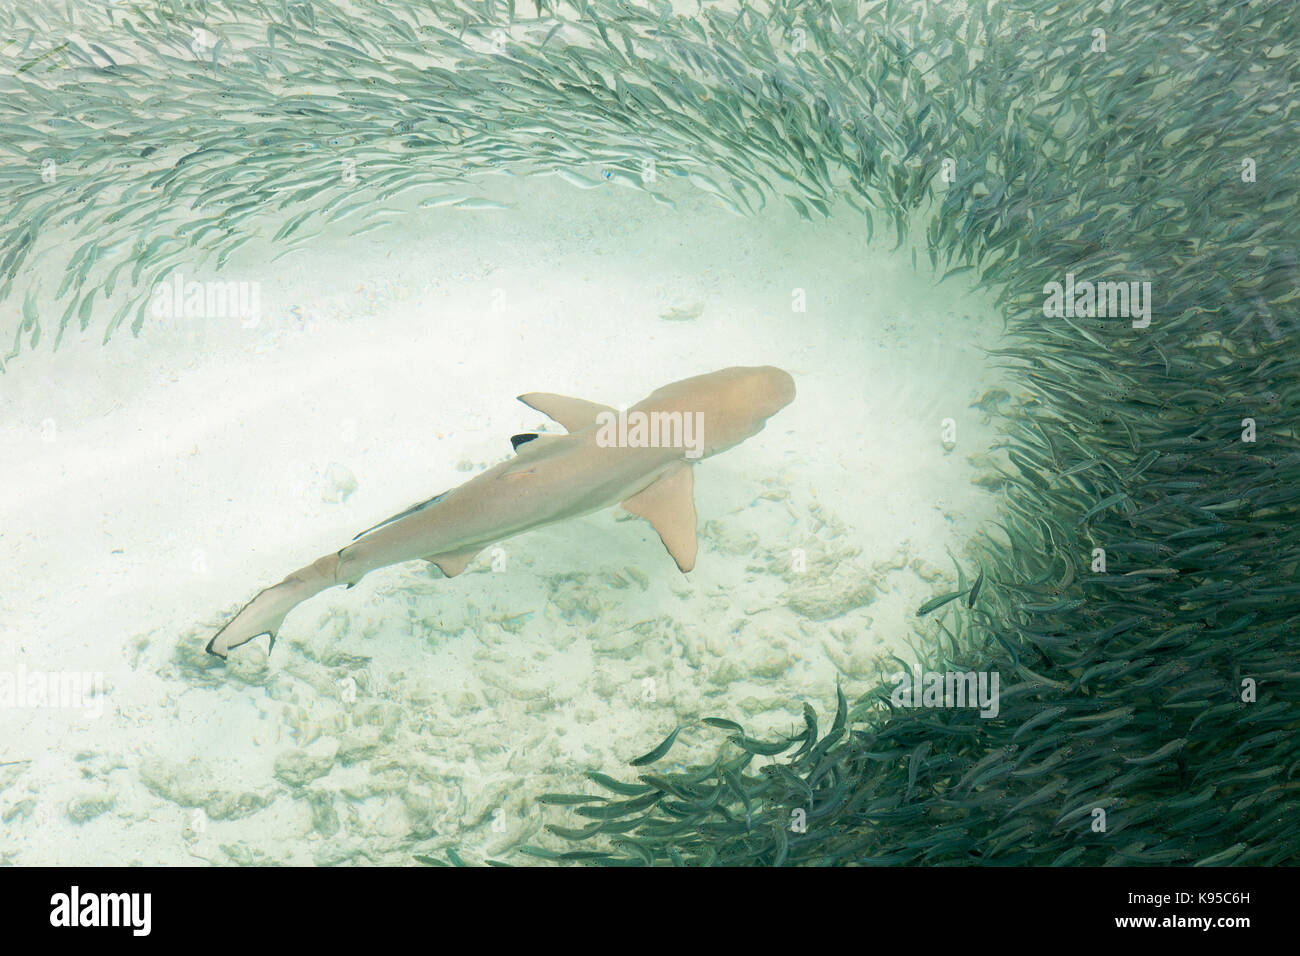 Maldive - un blacktip Shark Reef ( carcharhinus melanopterus ) nuota attraverso una secca di piccoli pesci; Maldive, asia Foto Stock